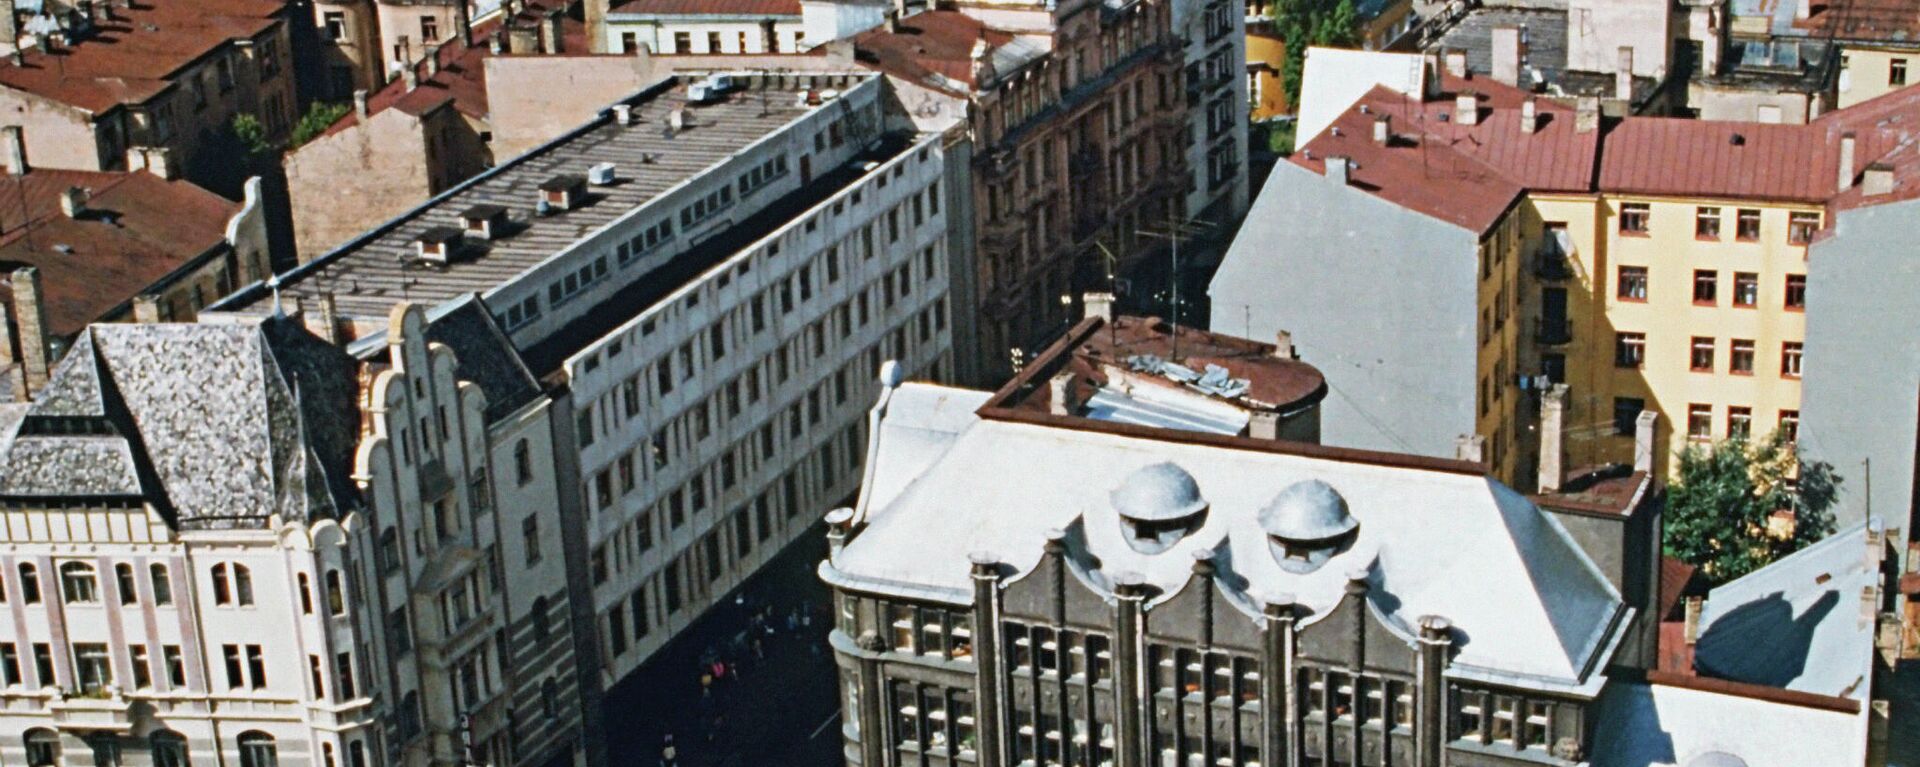 Панорама города Рига в Латвии, 1990 год - Sputnik Латвия, 1920, 16.08.2021